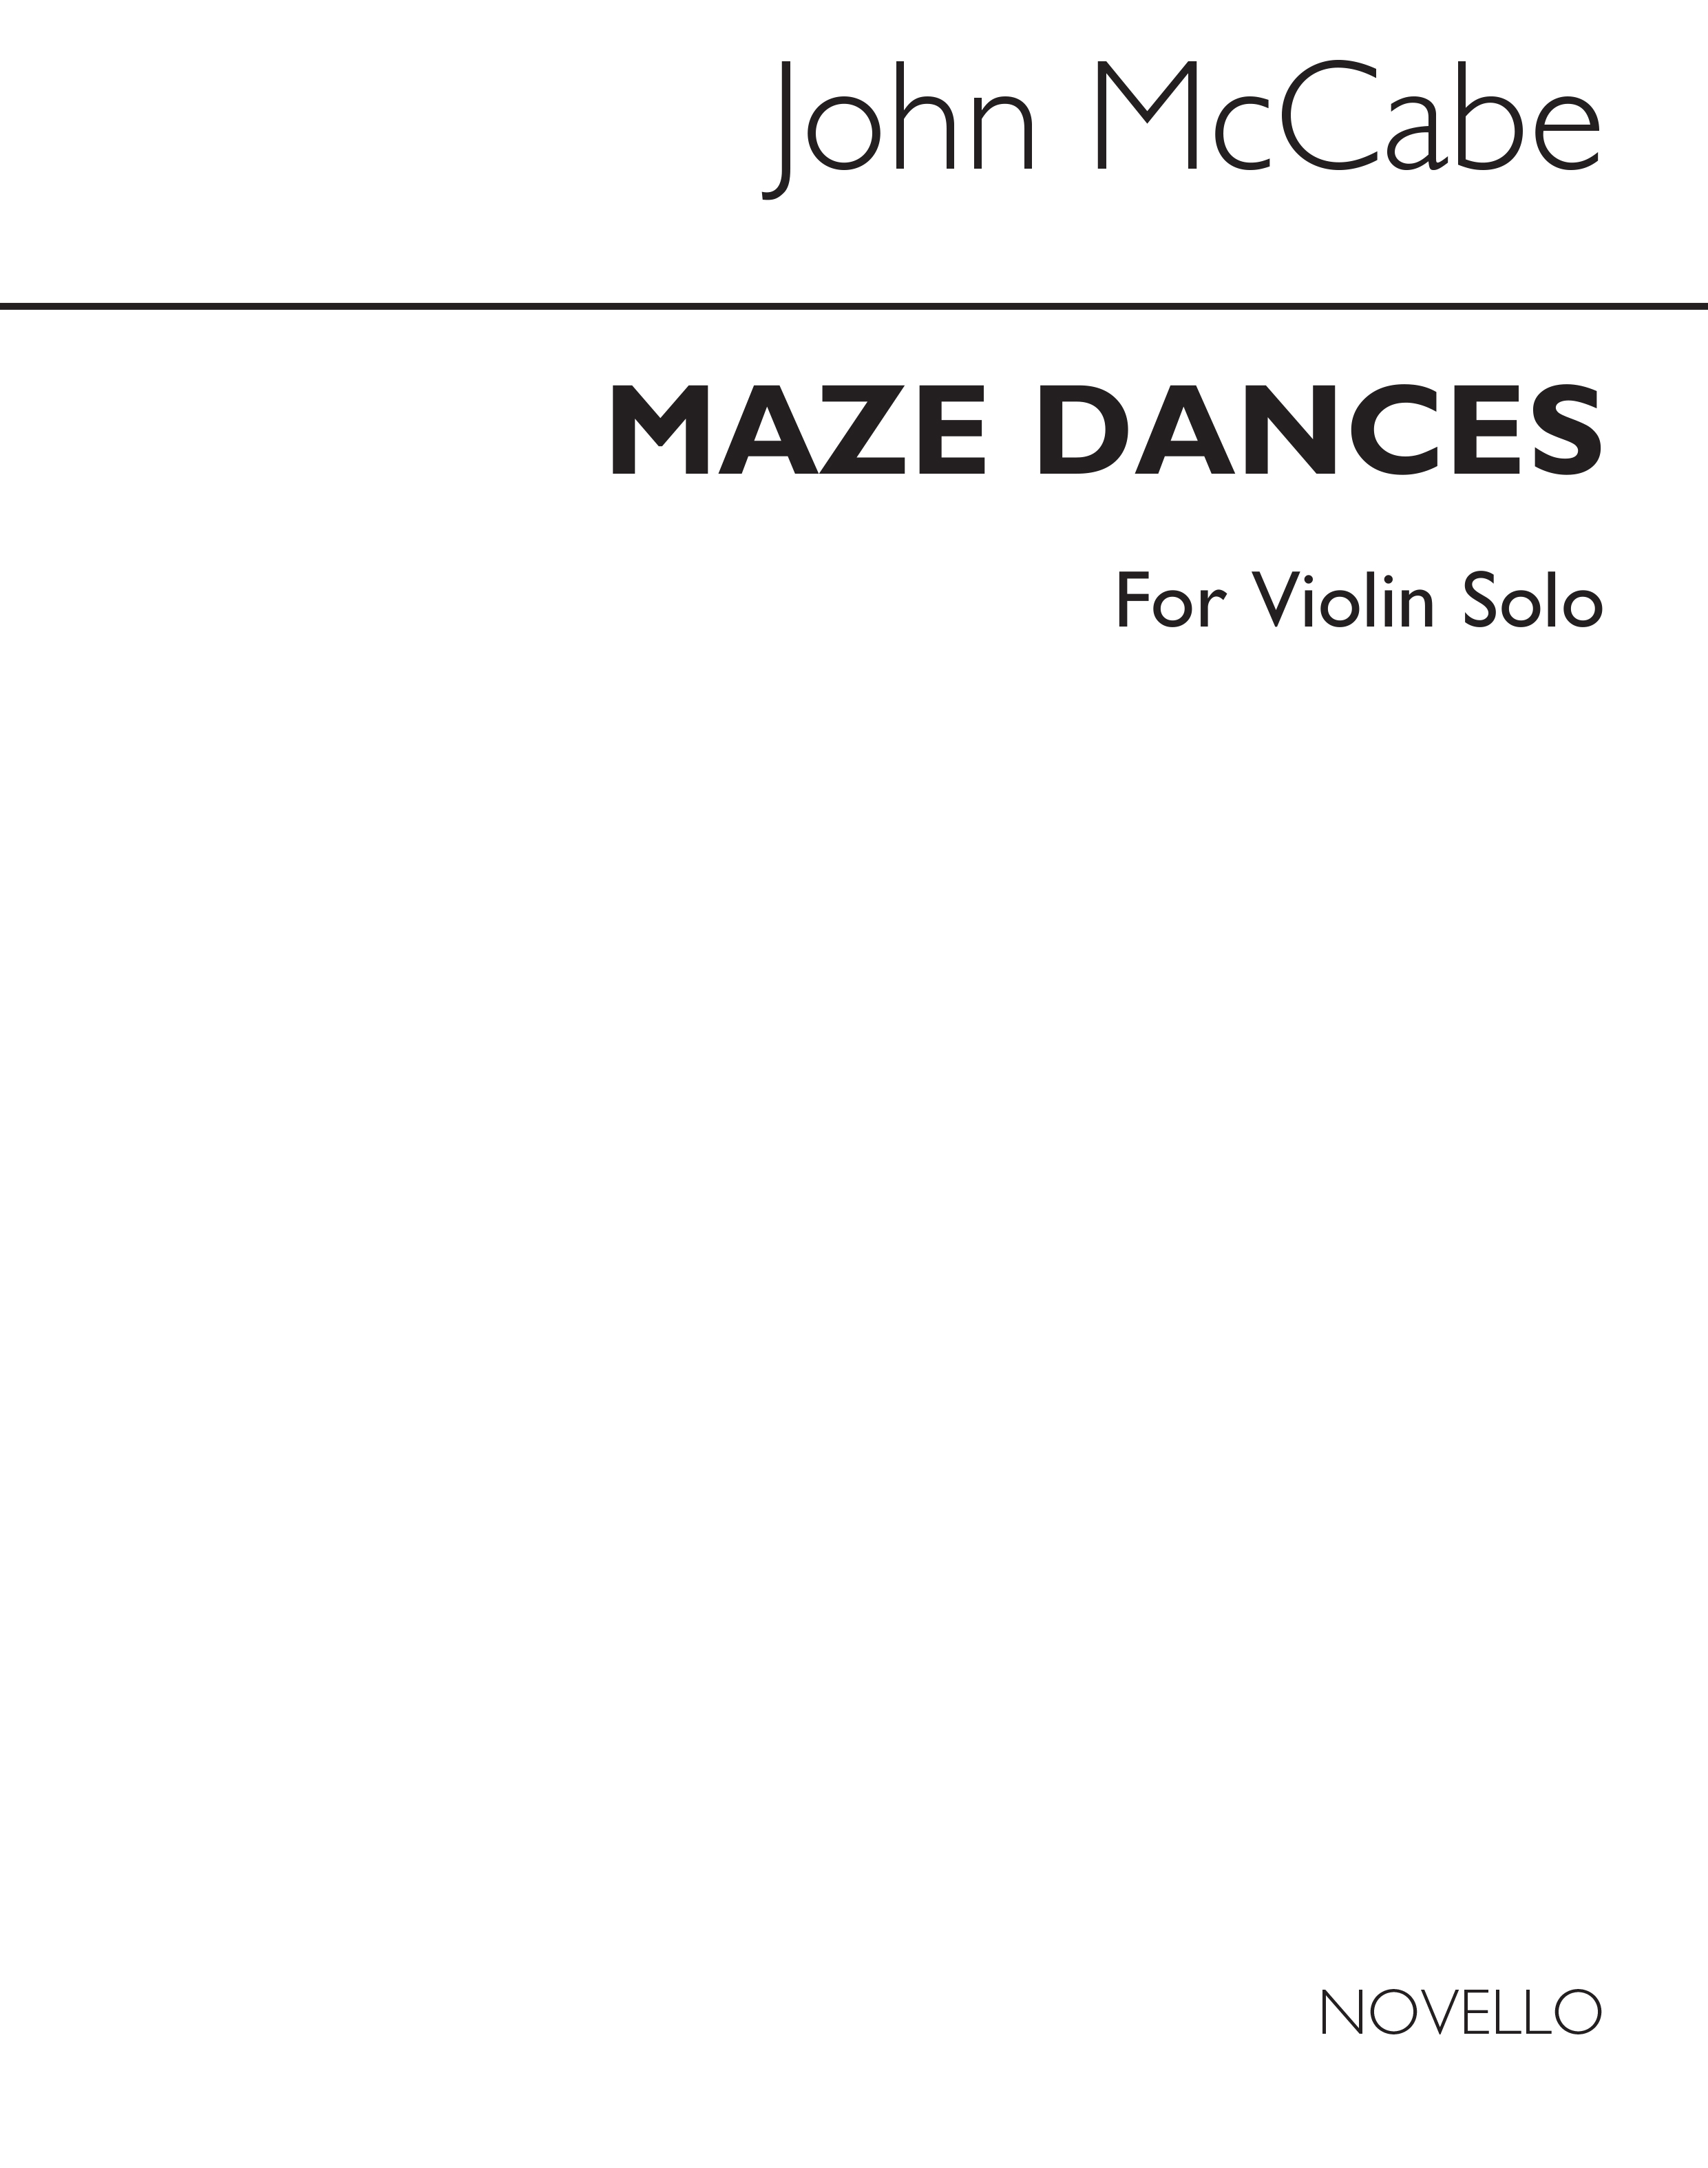 McCabe: Maze Dances for Violin Solo